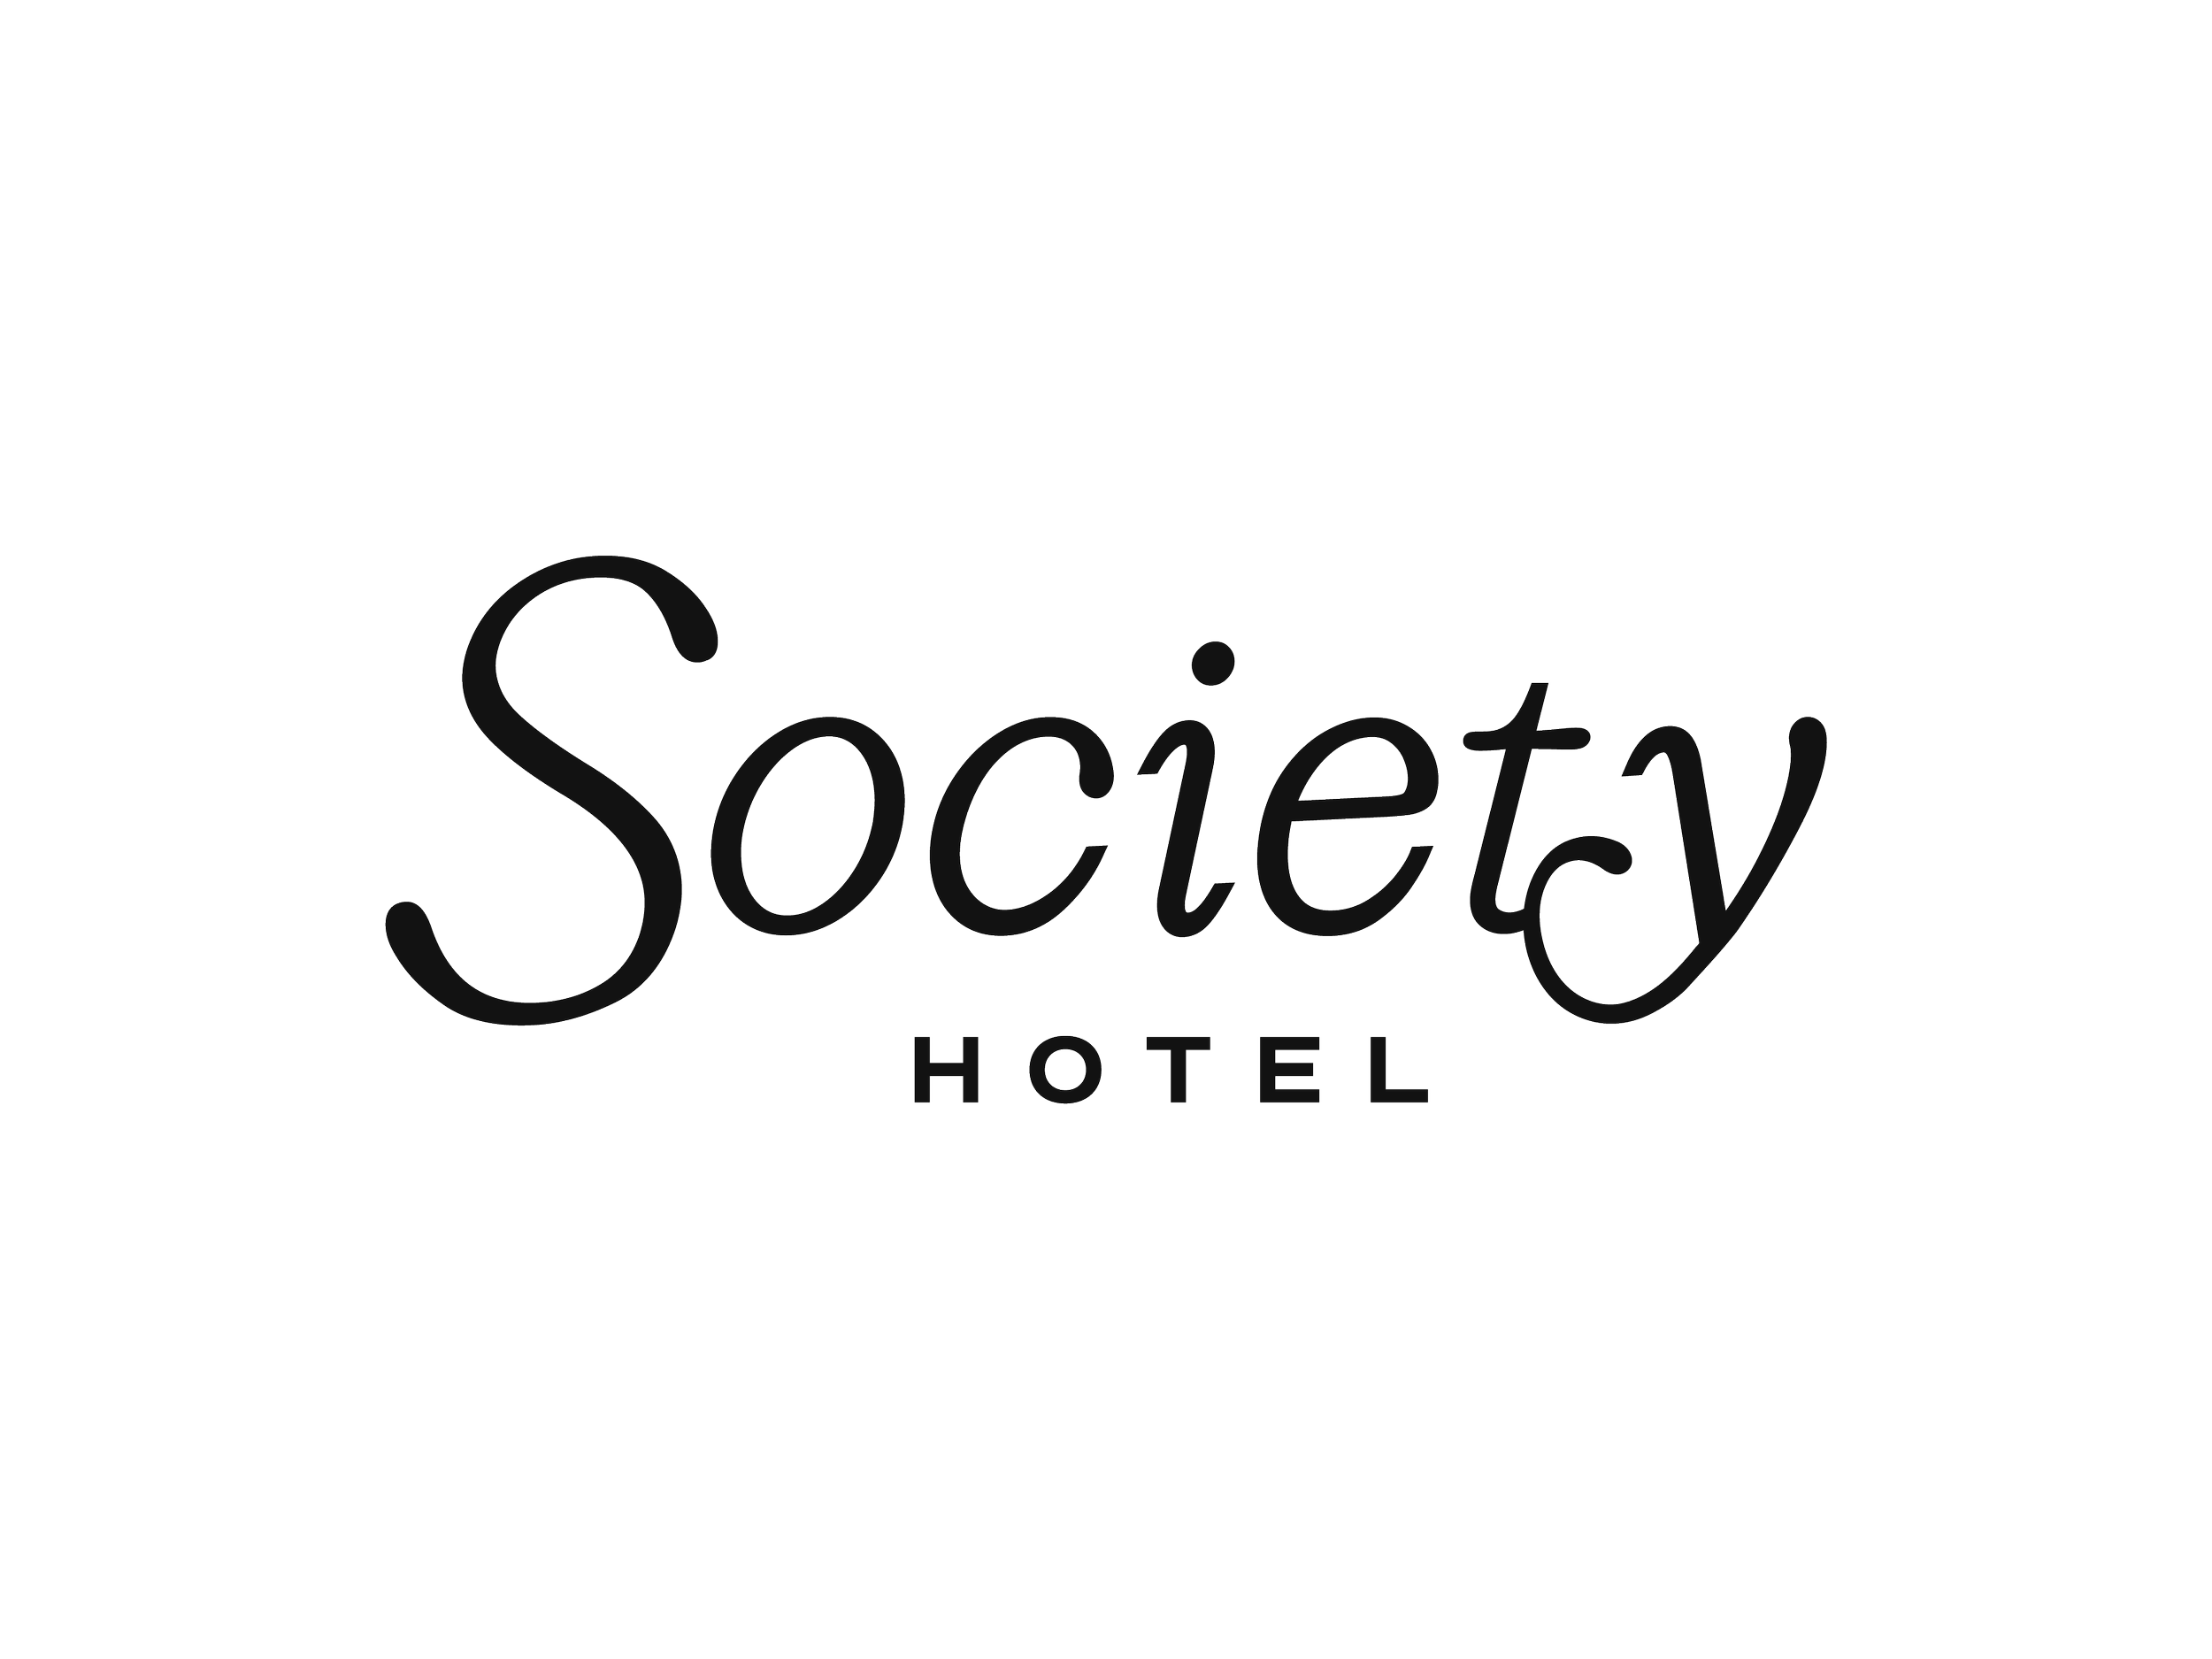 Society Hotel Lockup.png